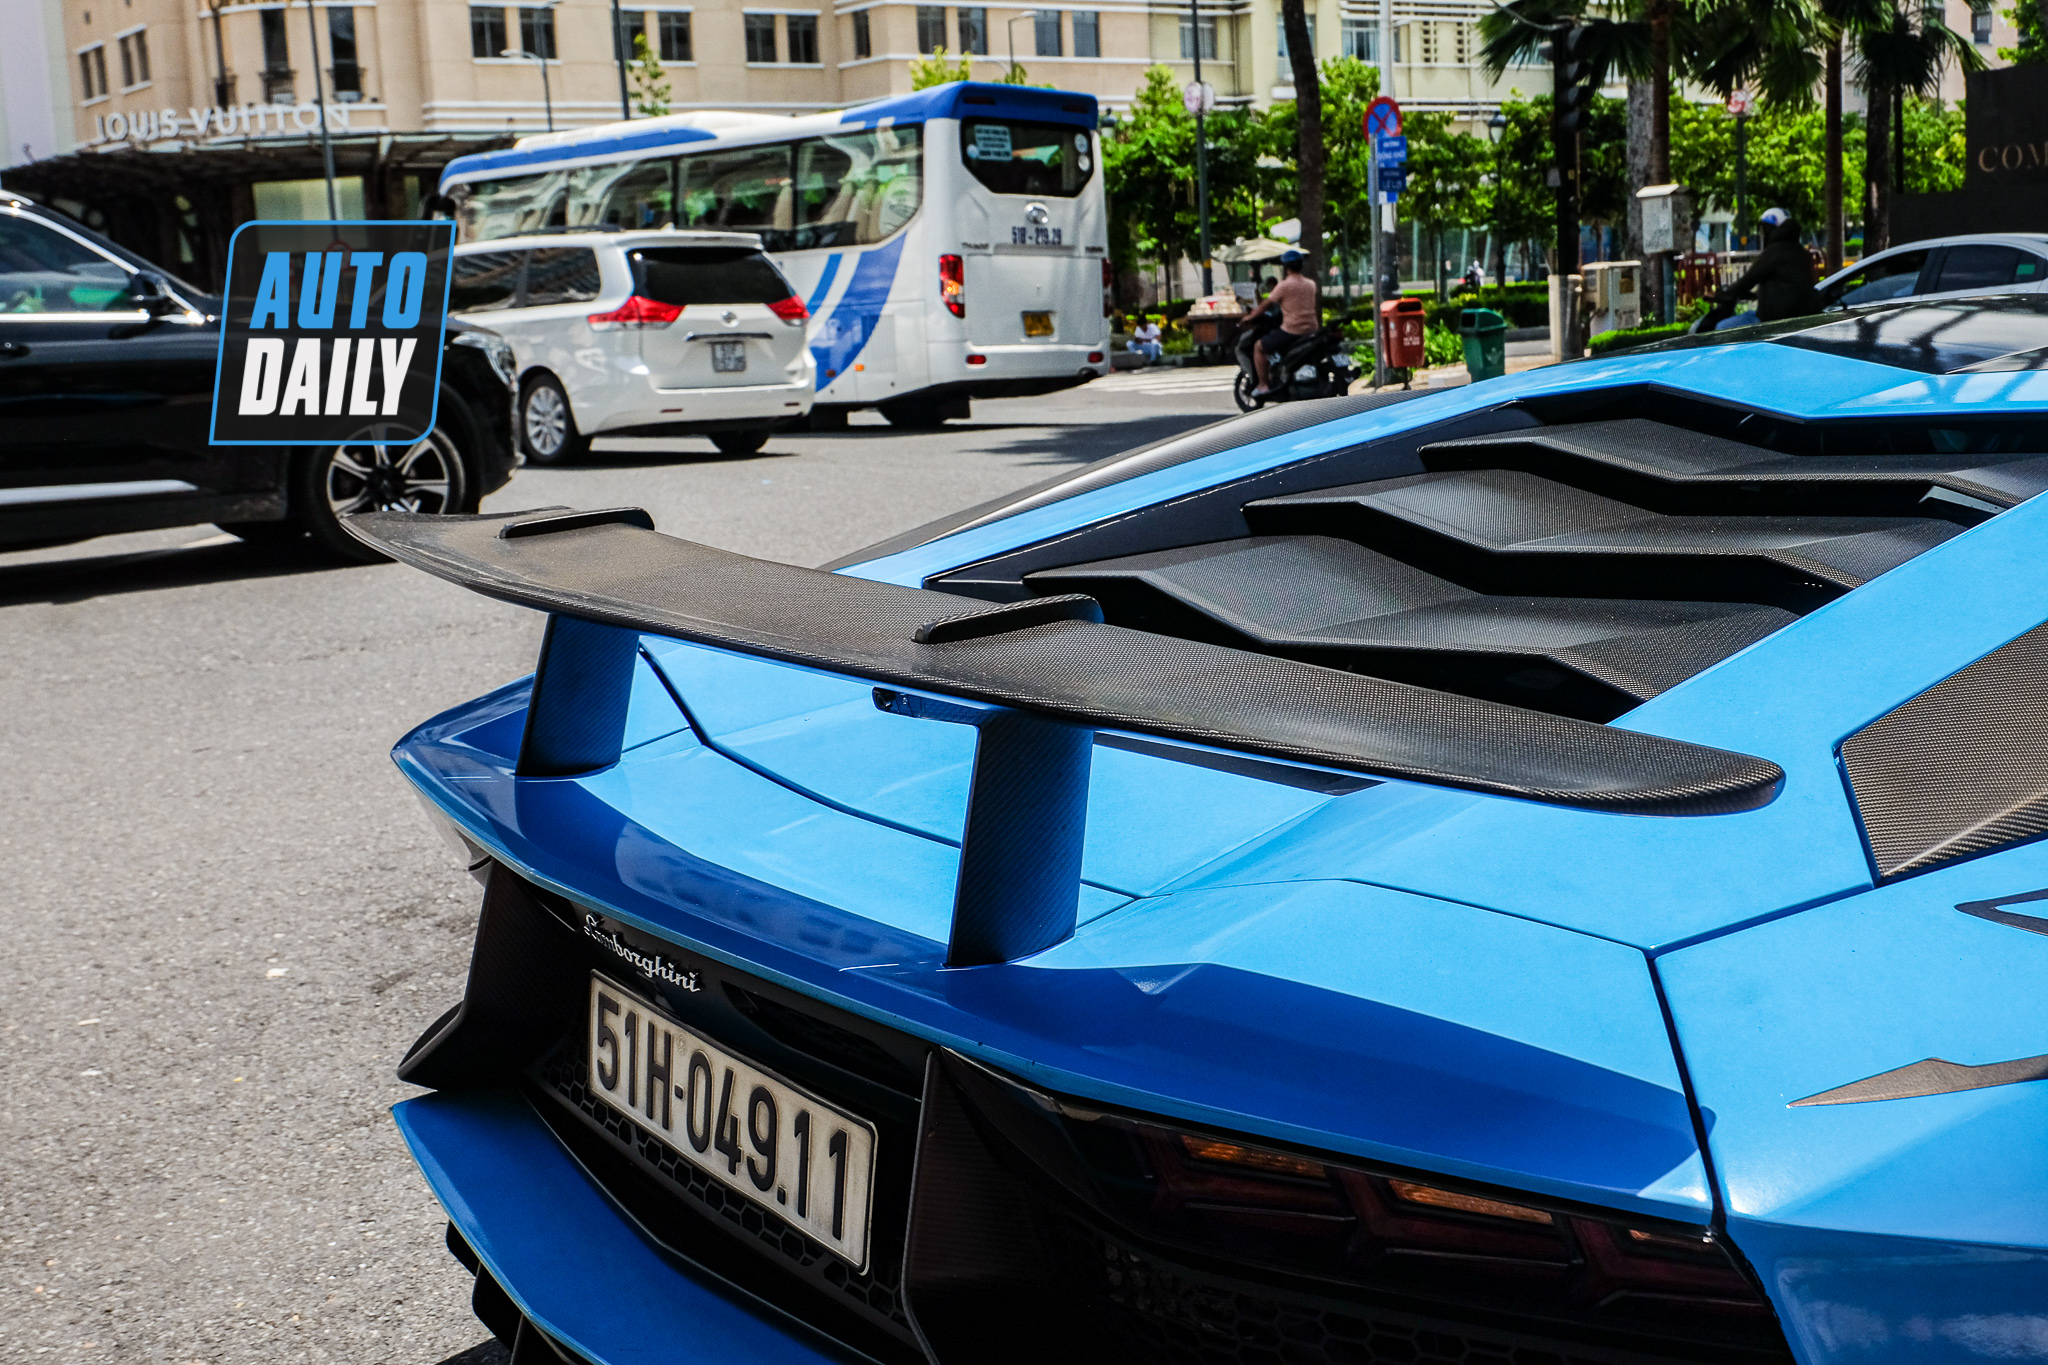 Lamborghini Aventador SV hơn 35 tỷ đầu tiên về Việt Nam tái xuất trên phố lamborghini-aventador-sv-dau-tien-viet-nam-autodaily-11.JPG